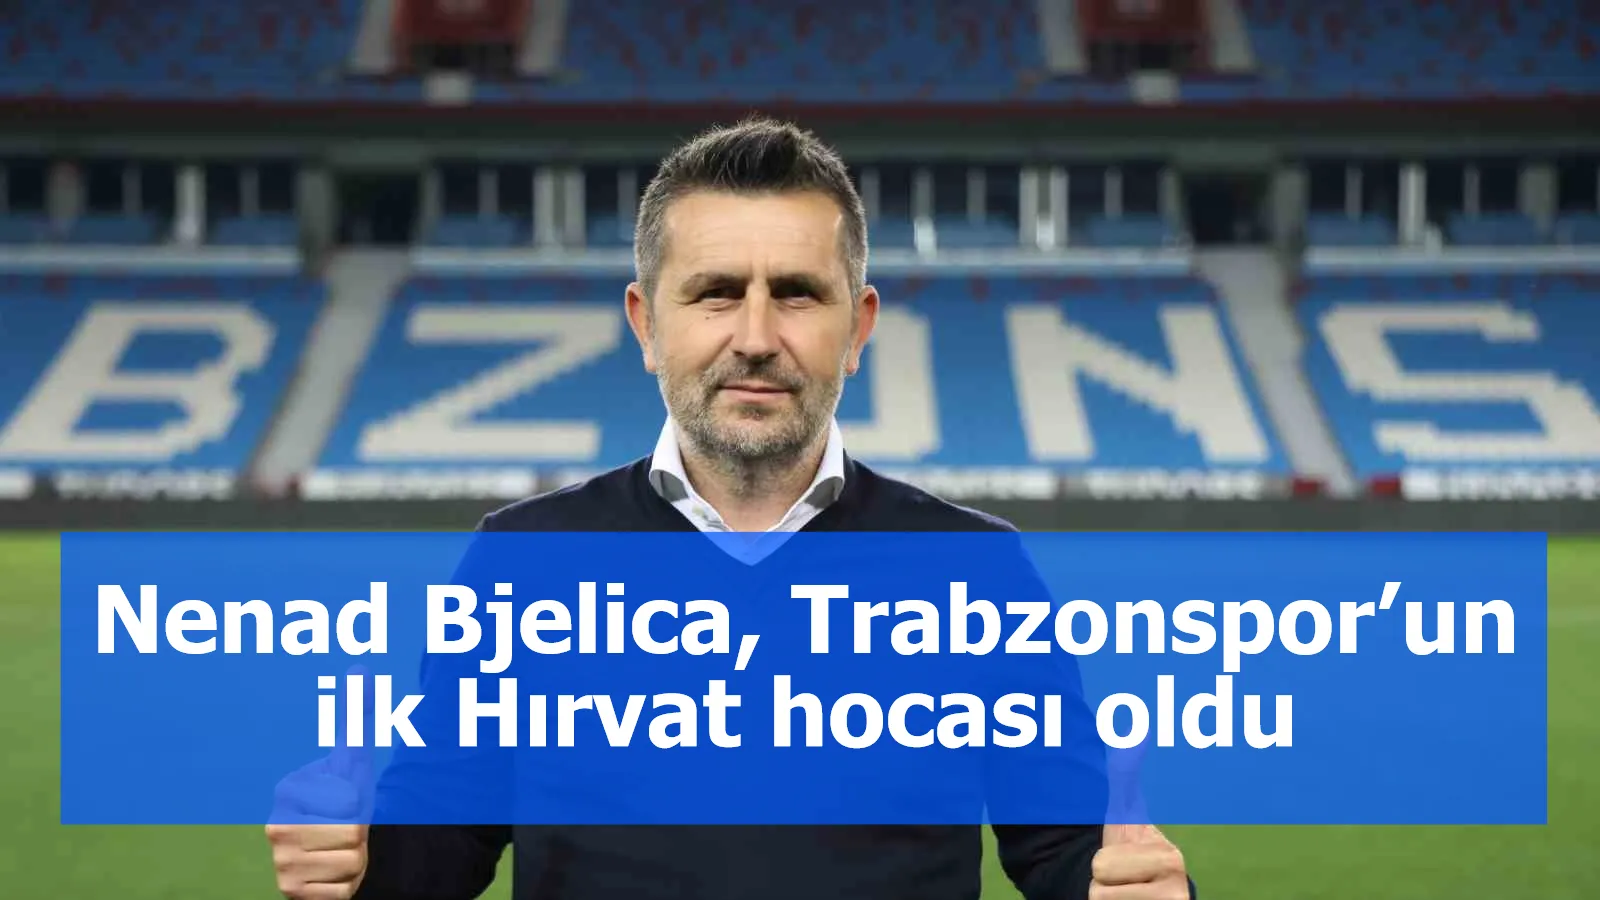 Nenad Bjelica, Trabzonspor’un ilk Hırvat hocası oldu